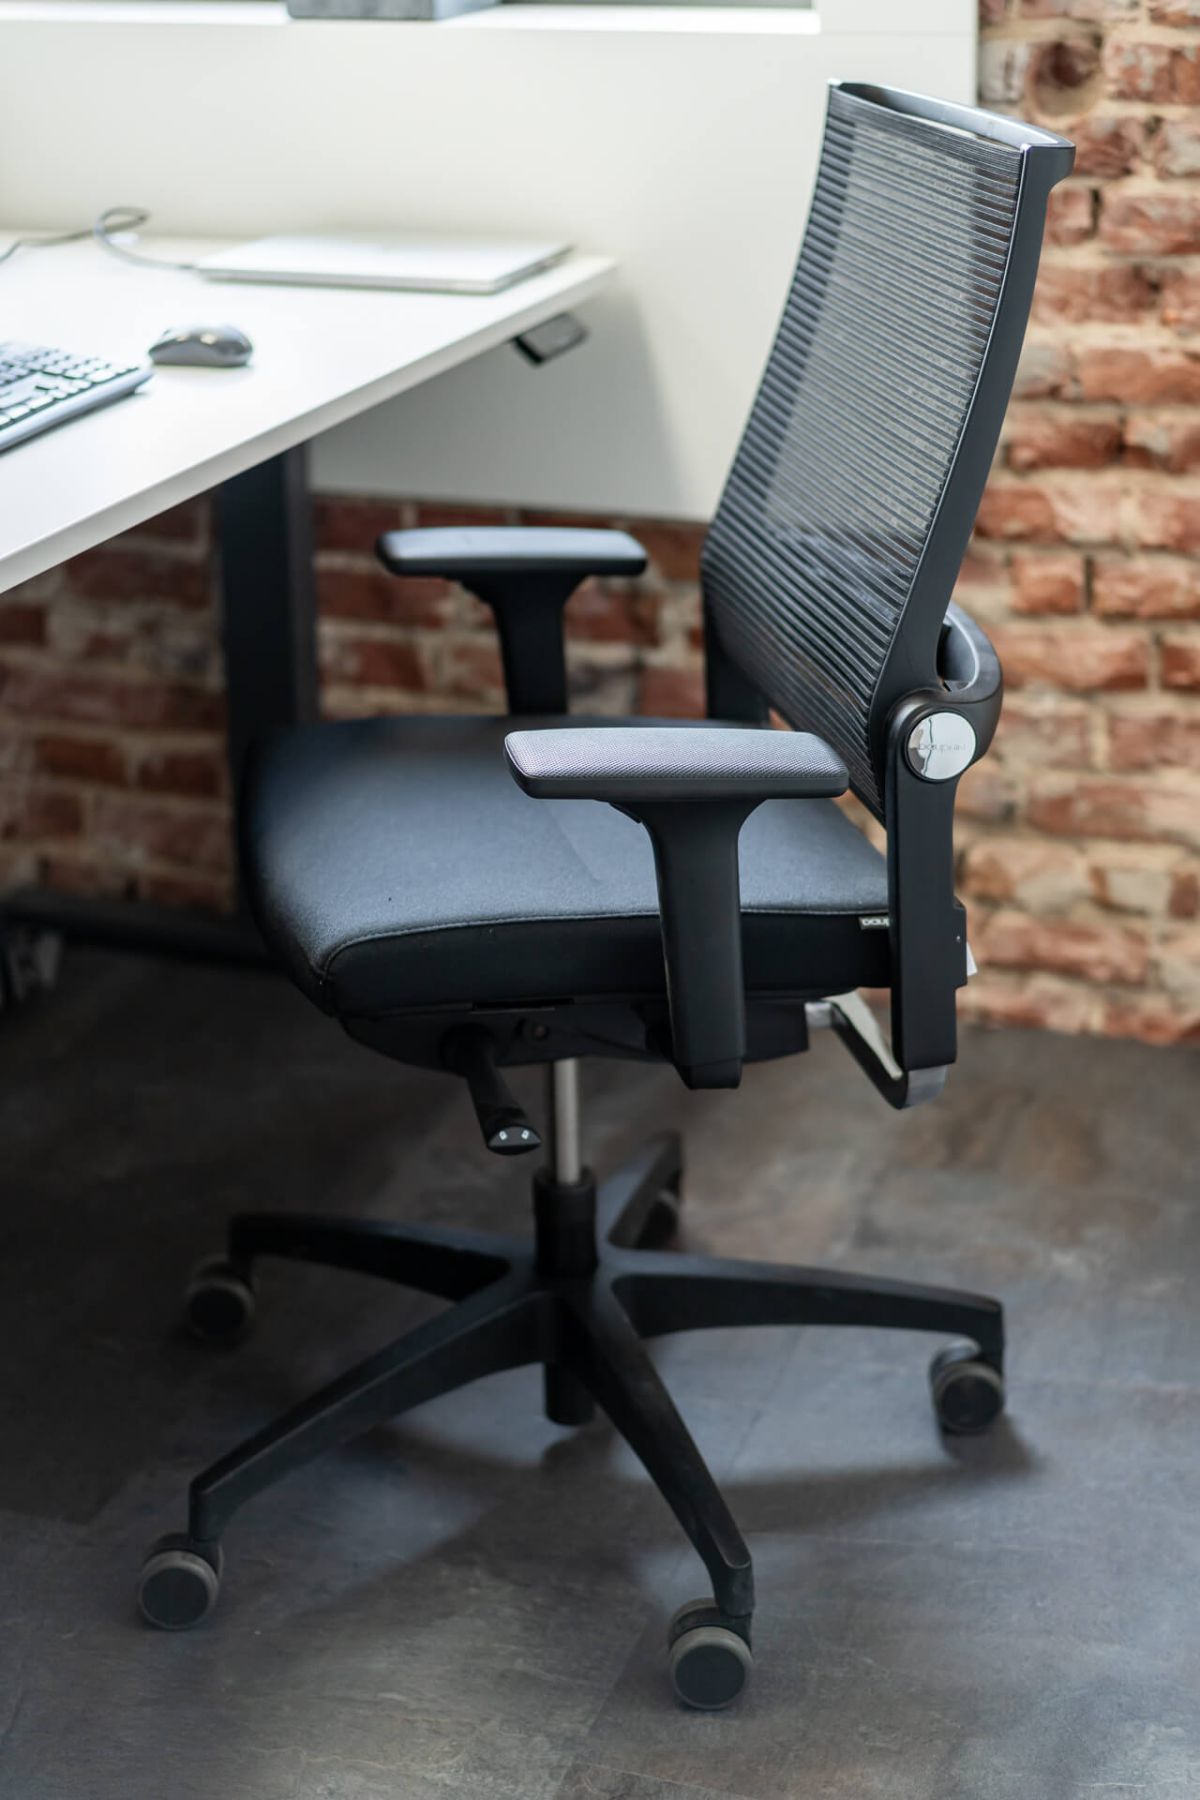 Der ergonomische Büroarbeitsstuhl bietet die perfekte Anpassungsfähigkeit und Benutzerfreundlichkeit